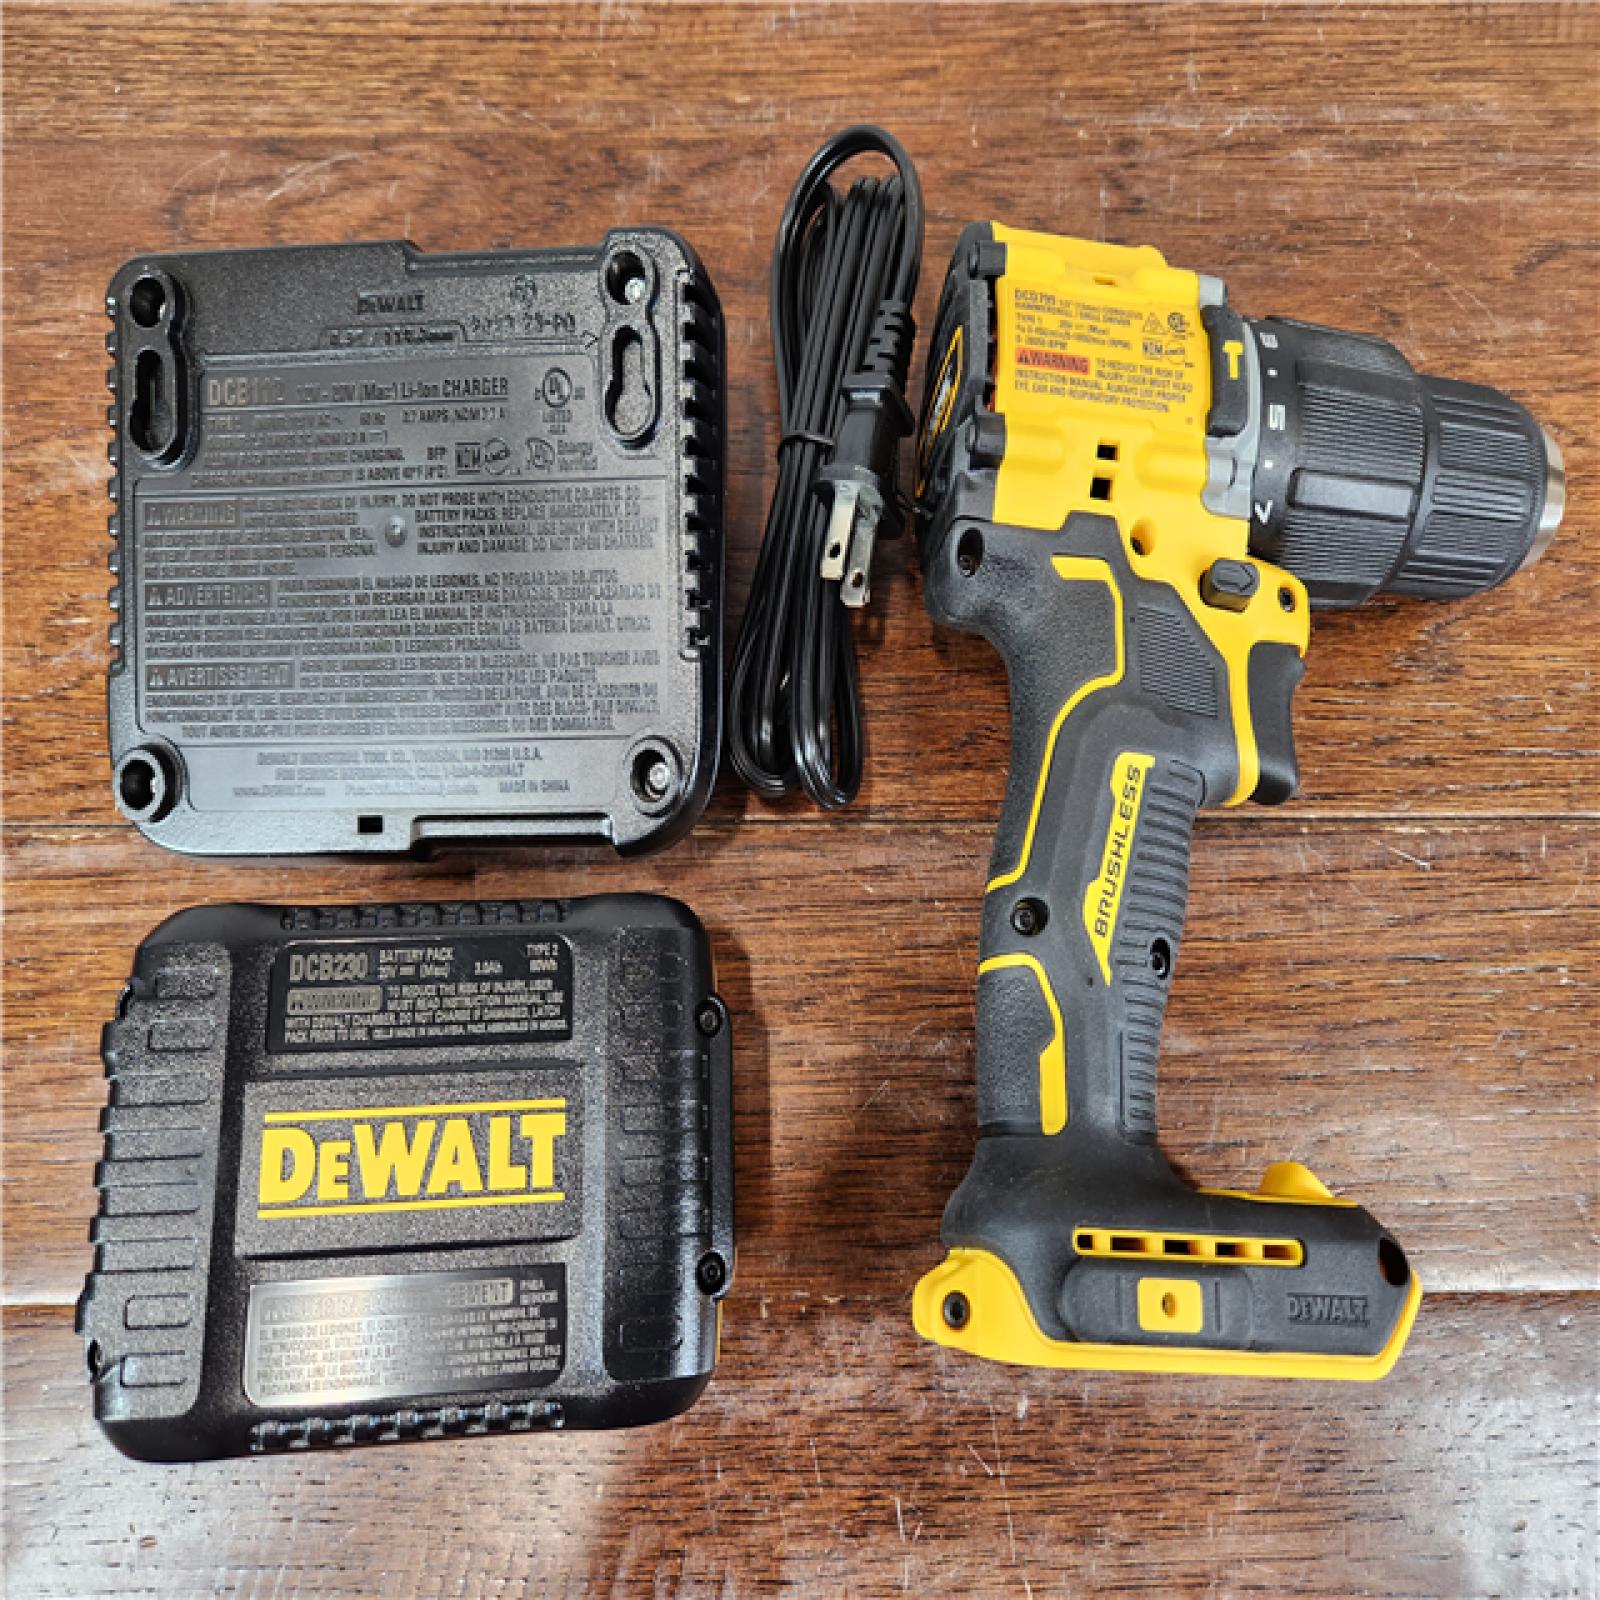 AS-IS DEWALT ATOMIC 20V MAX Brushless Cordless 1/2 Hammer Drill Kit